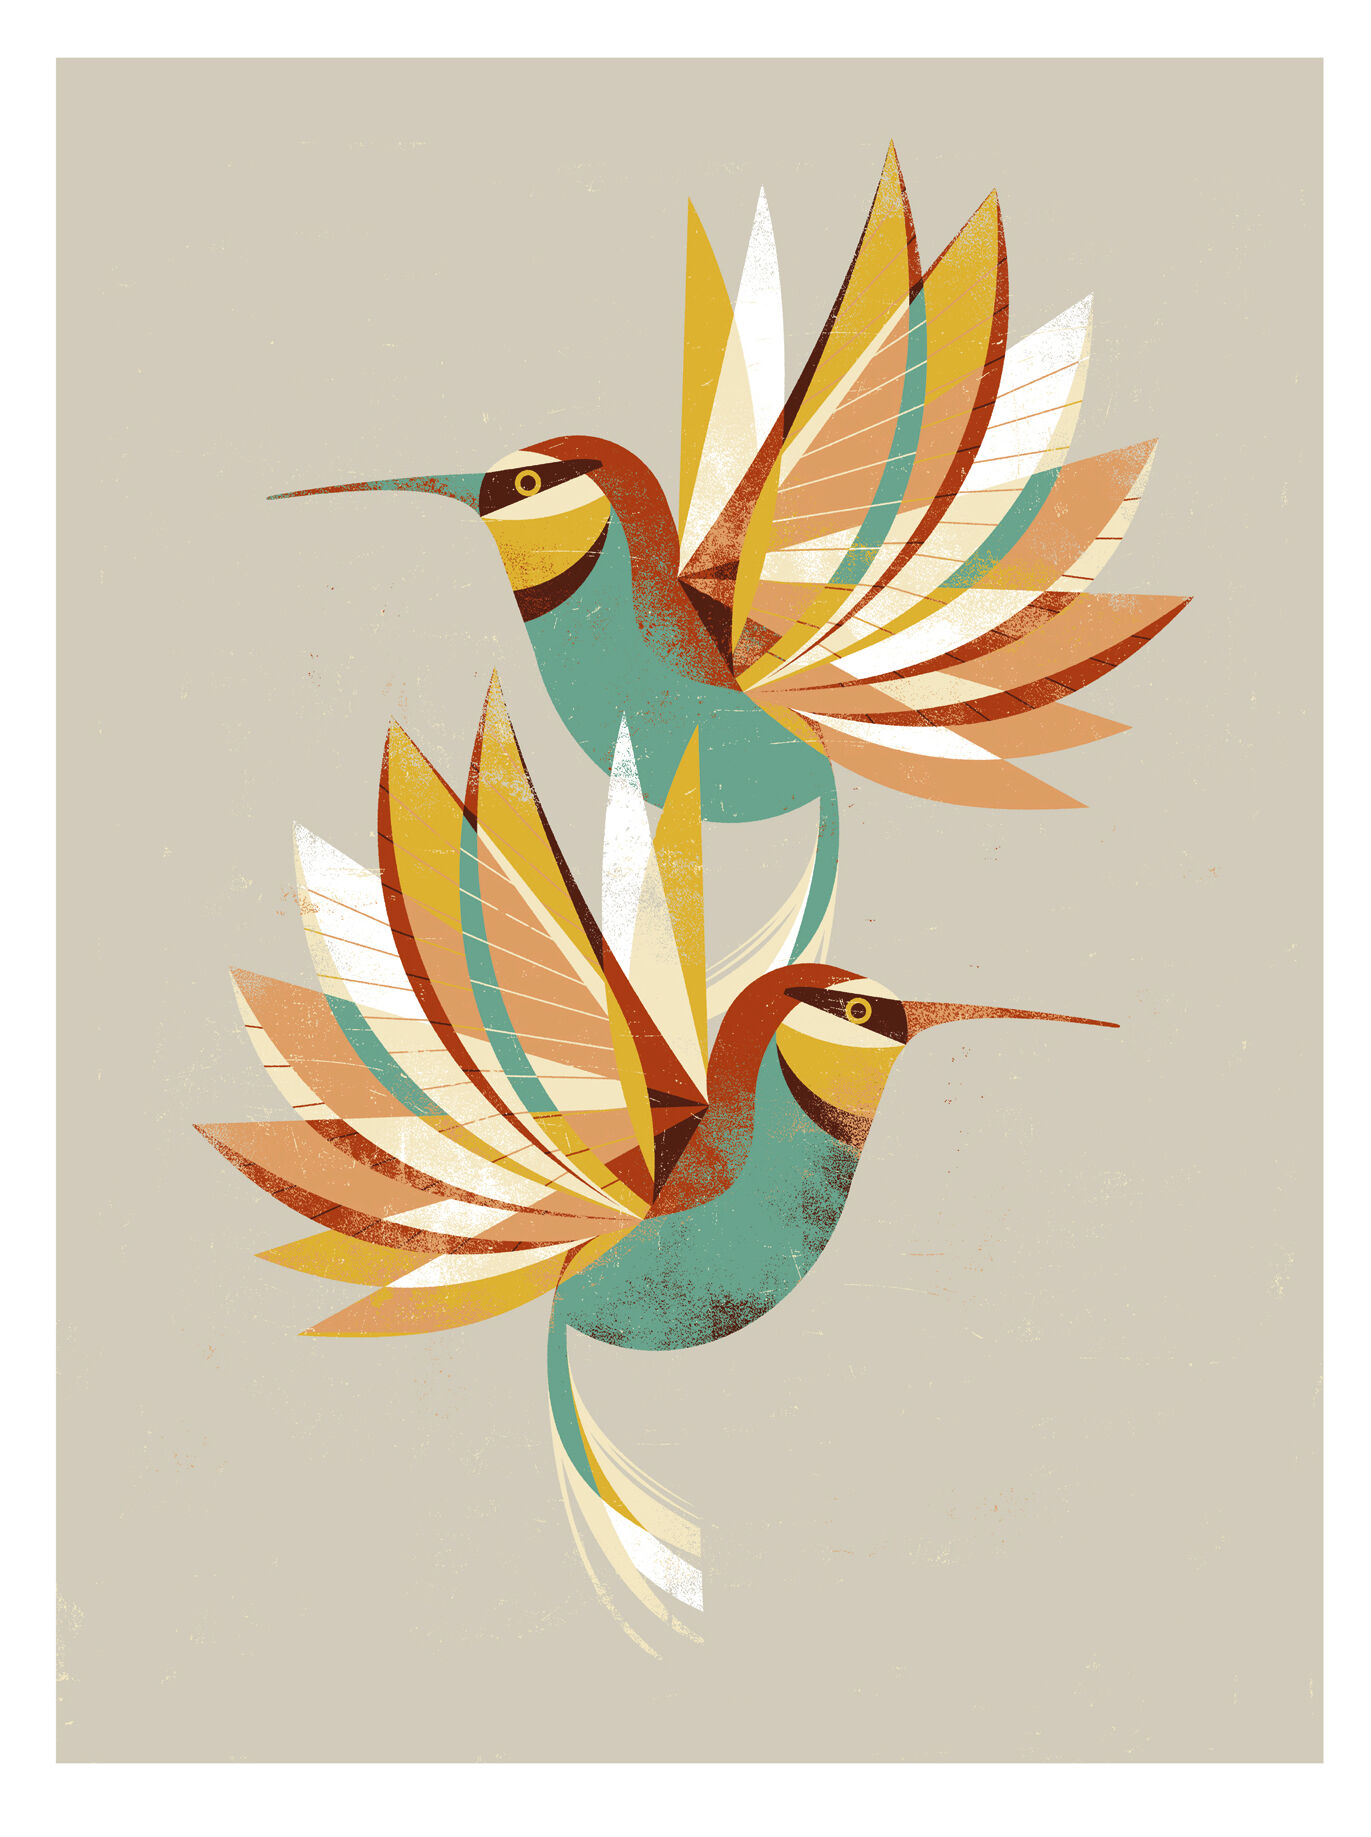 Beeld "Hummingbird" (2015) von Dieter Braun